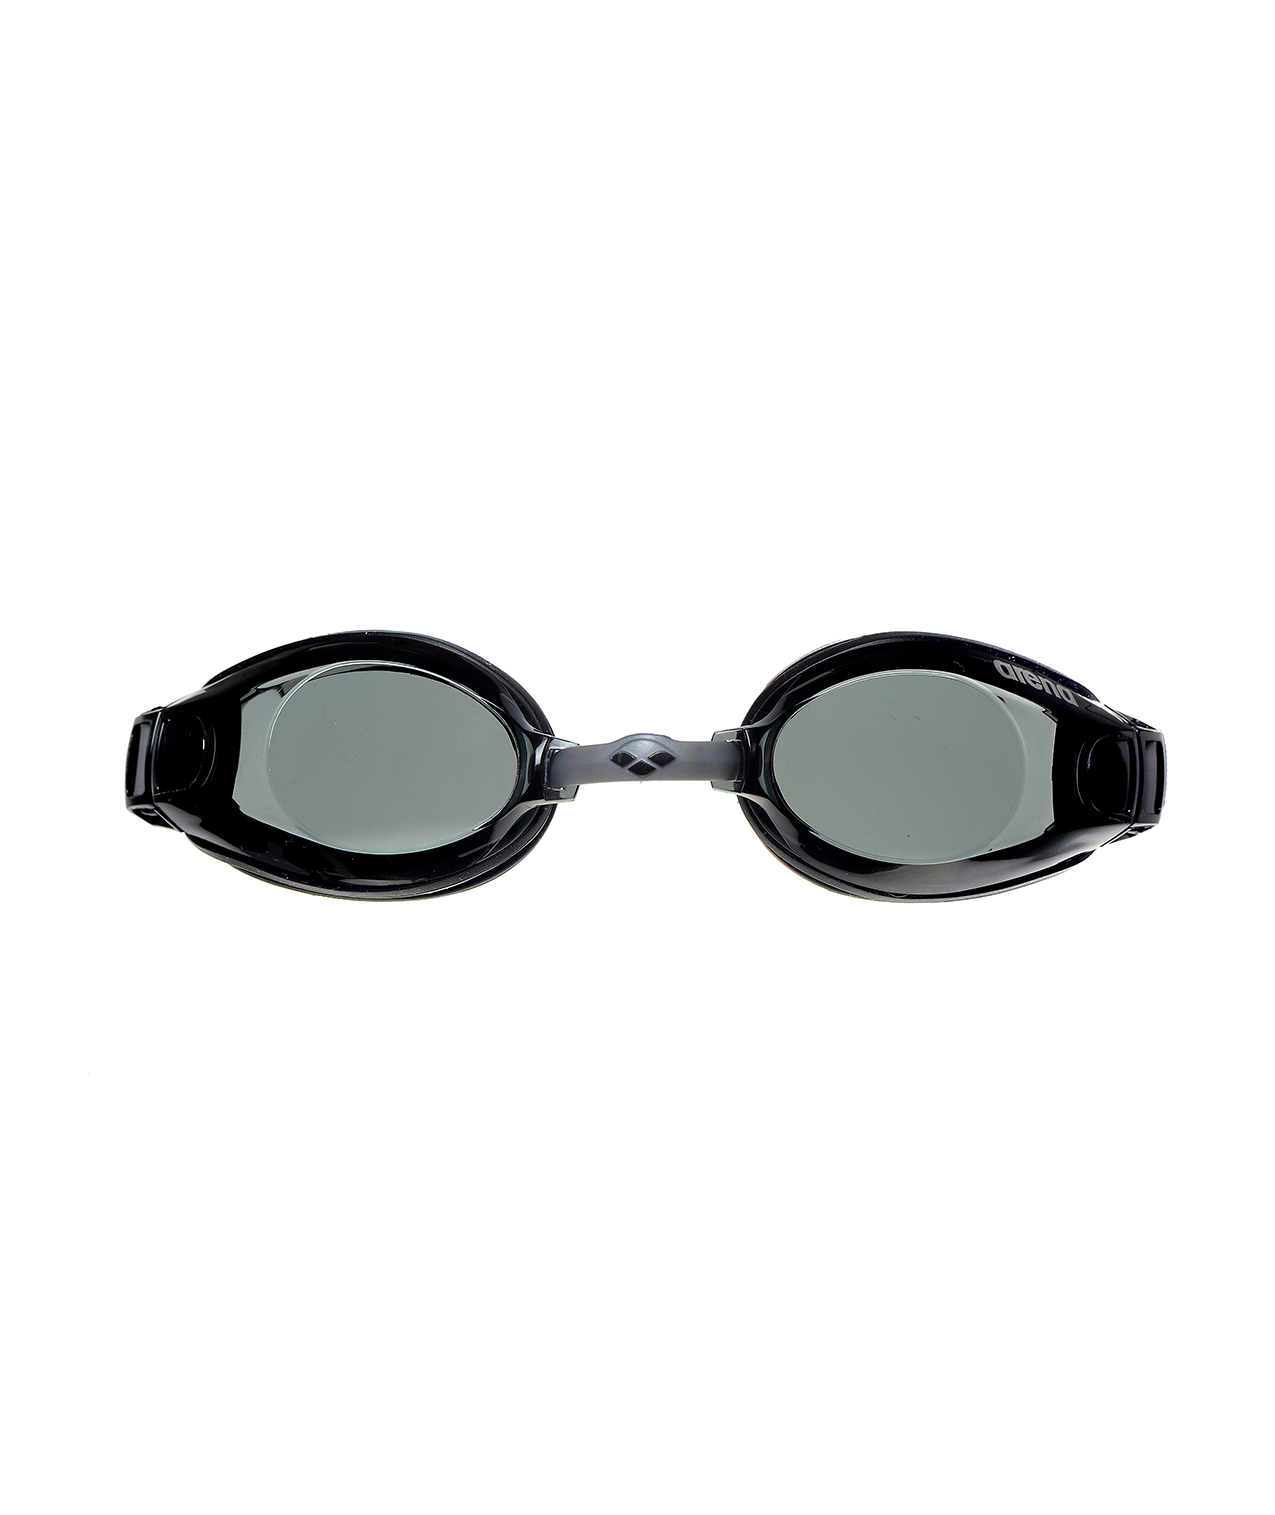 Gafas de natación arena unisex Zoom X-Fit Negro/Humo – arena® España